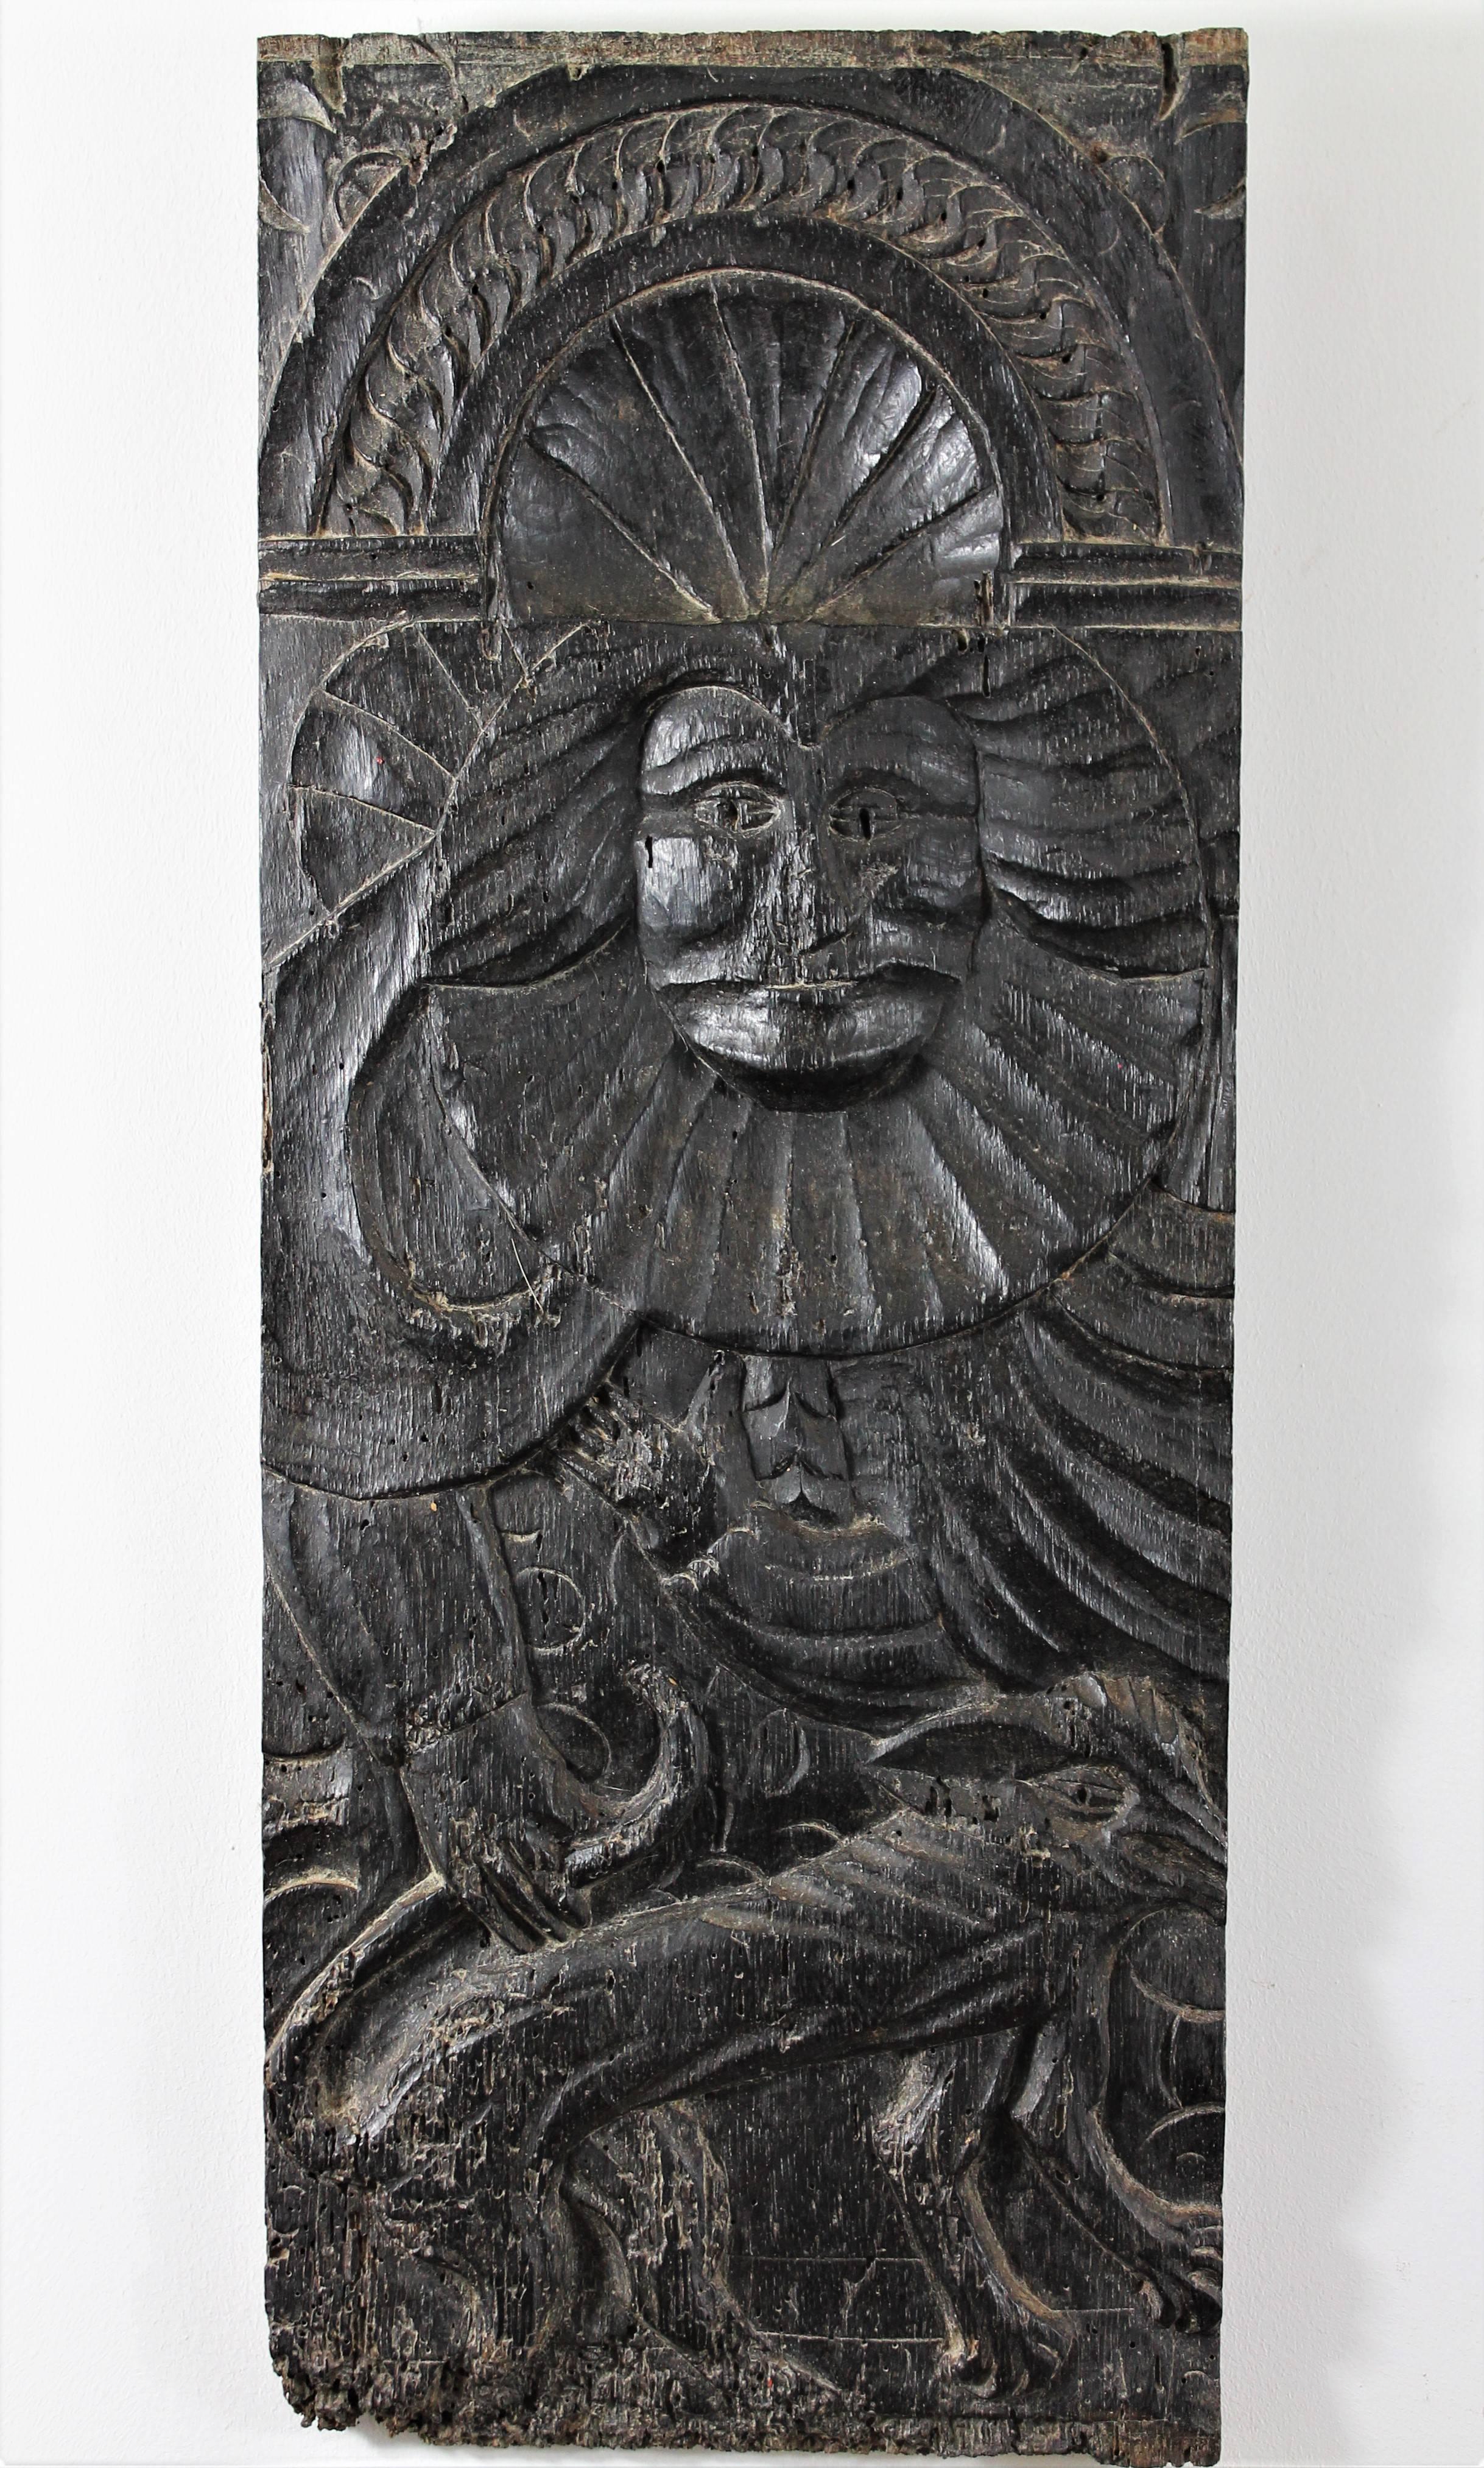 Satz von zwei Tafeln aus Eichenholz aus dem 16. Jahrhundert, eine stellt eine Figur in Begleitung eines Hundes dar, die andere eine Figur in Flammen, wahrscheinlich Heilige.
Diese Paneele stammen wahrscheinlich von einer Truhe oder einem Schrank